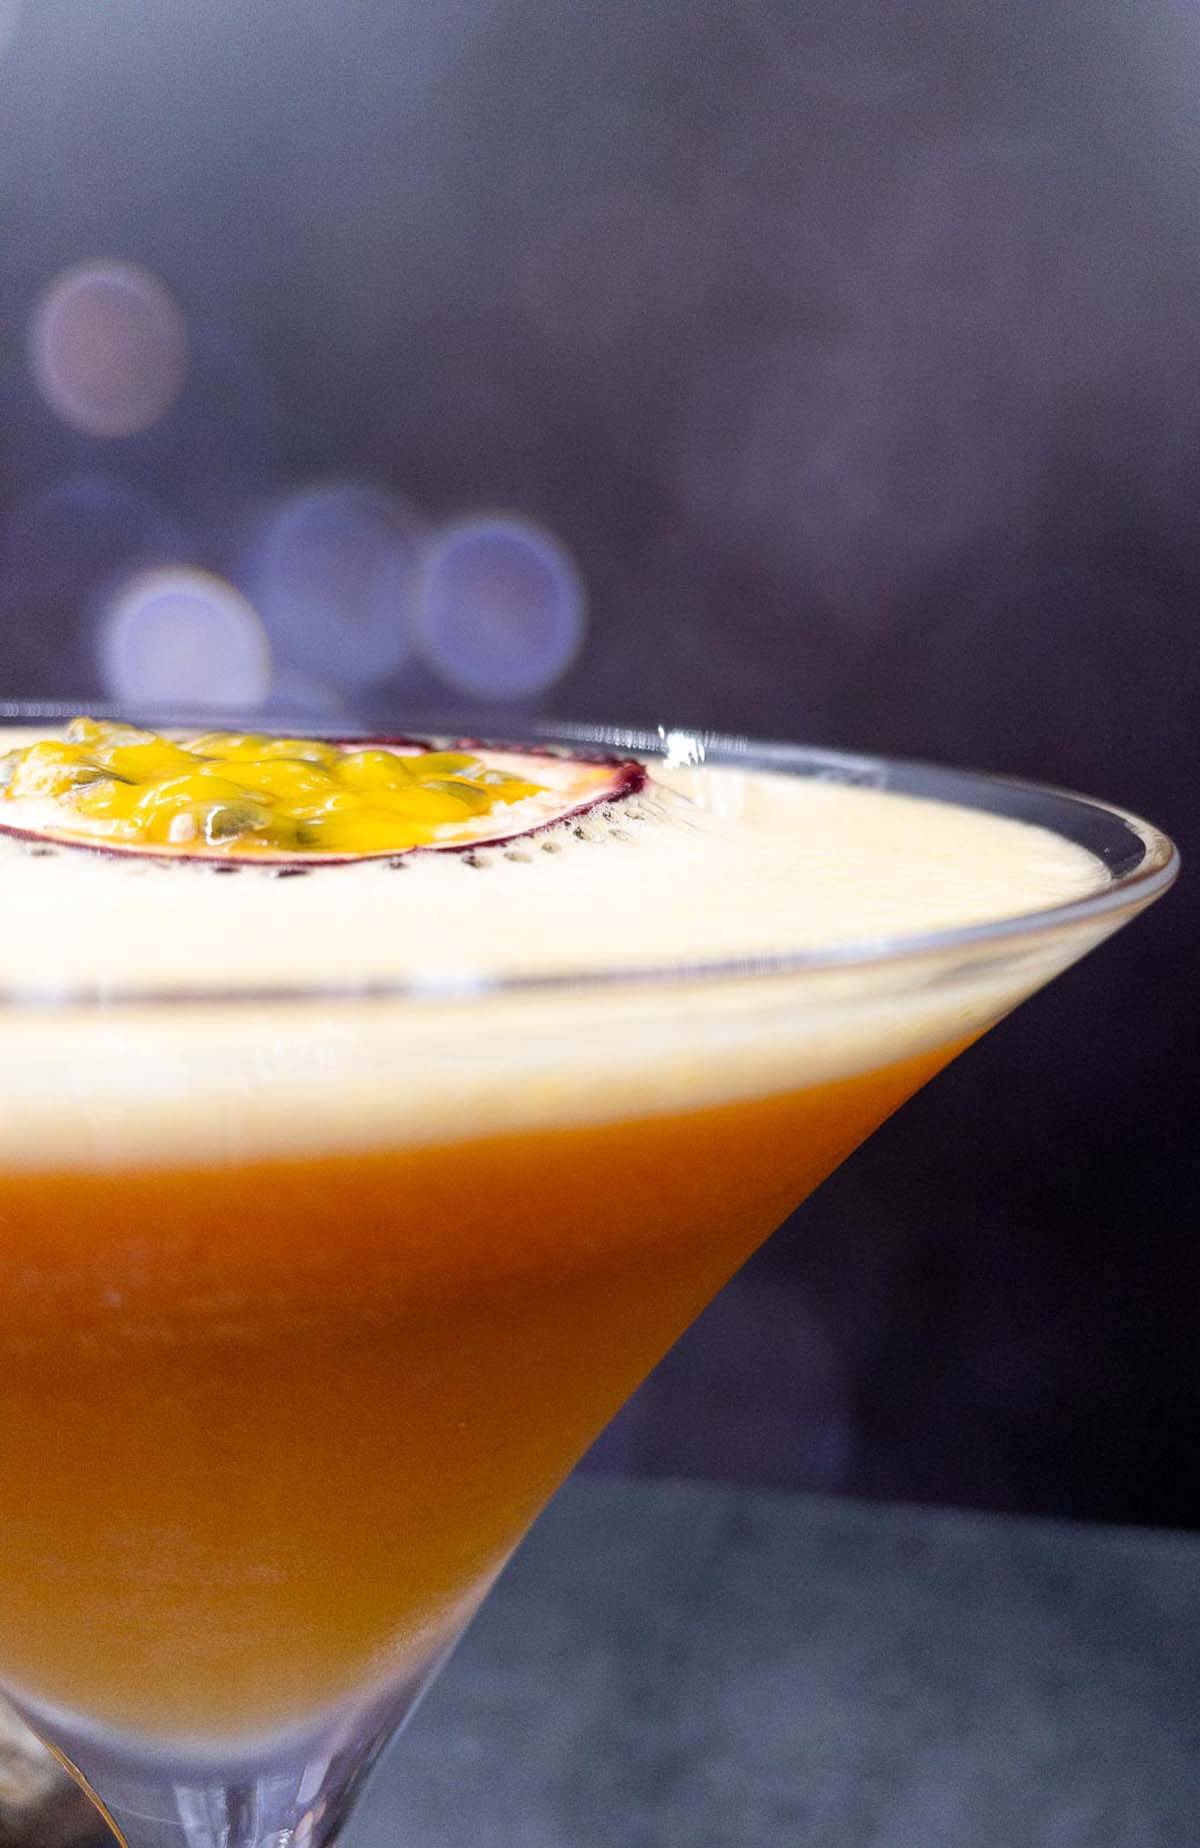 Pornstar martini gin in martini glass.